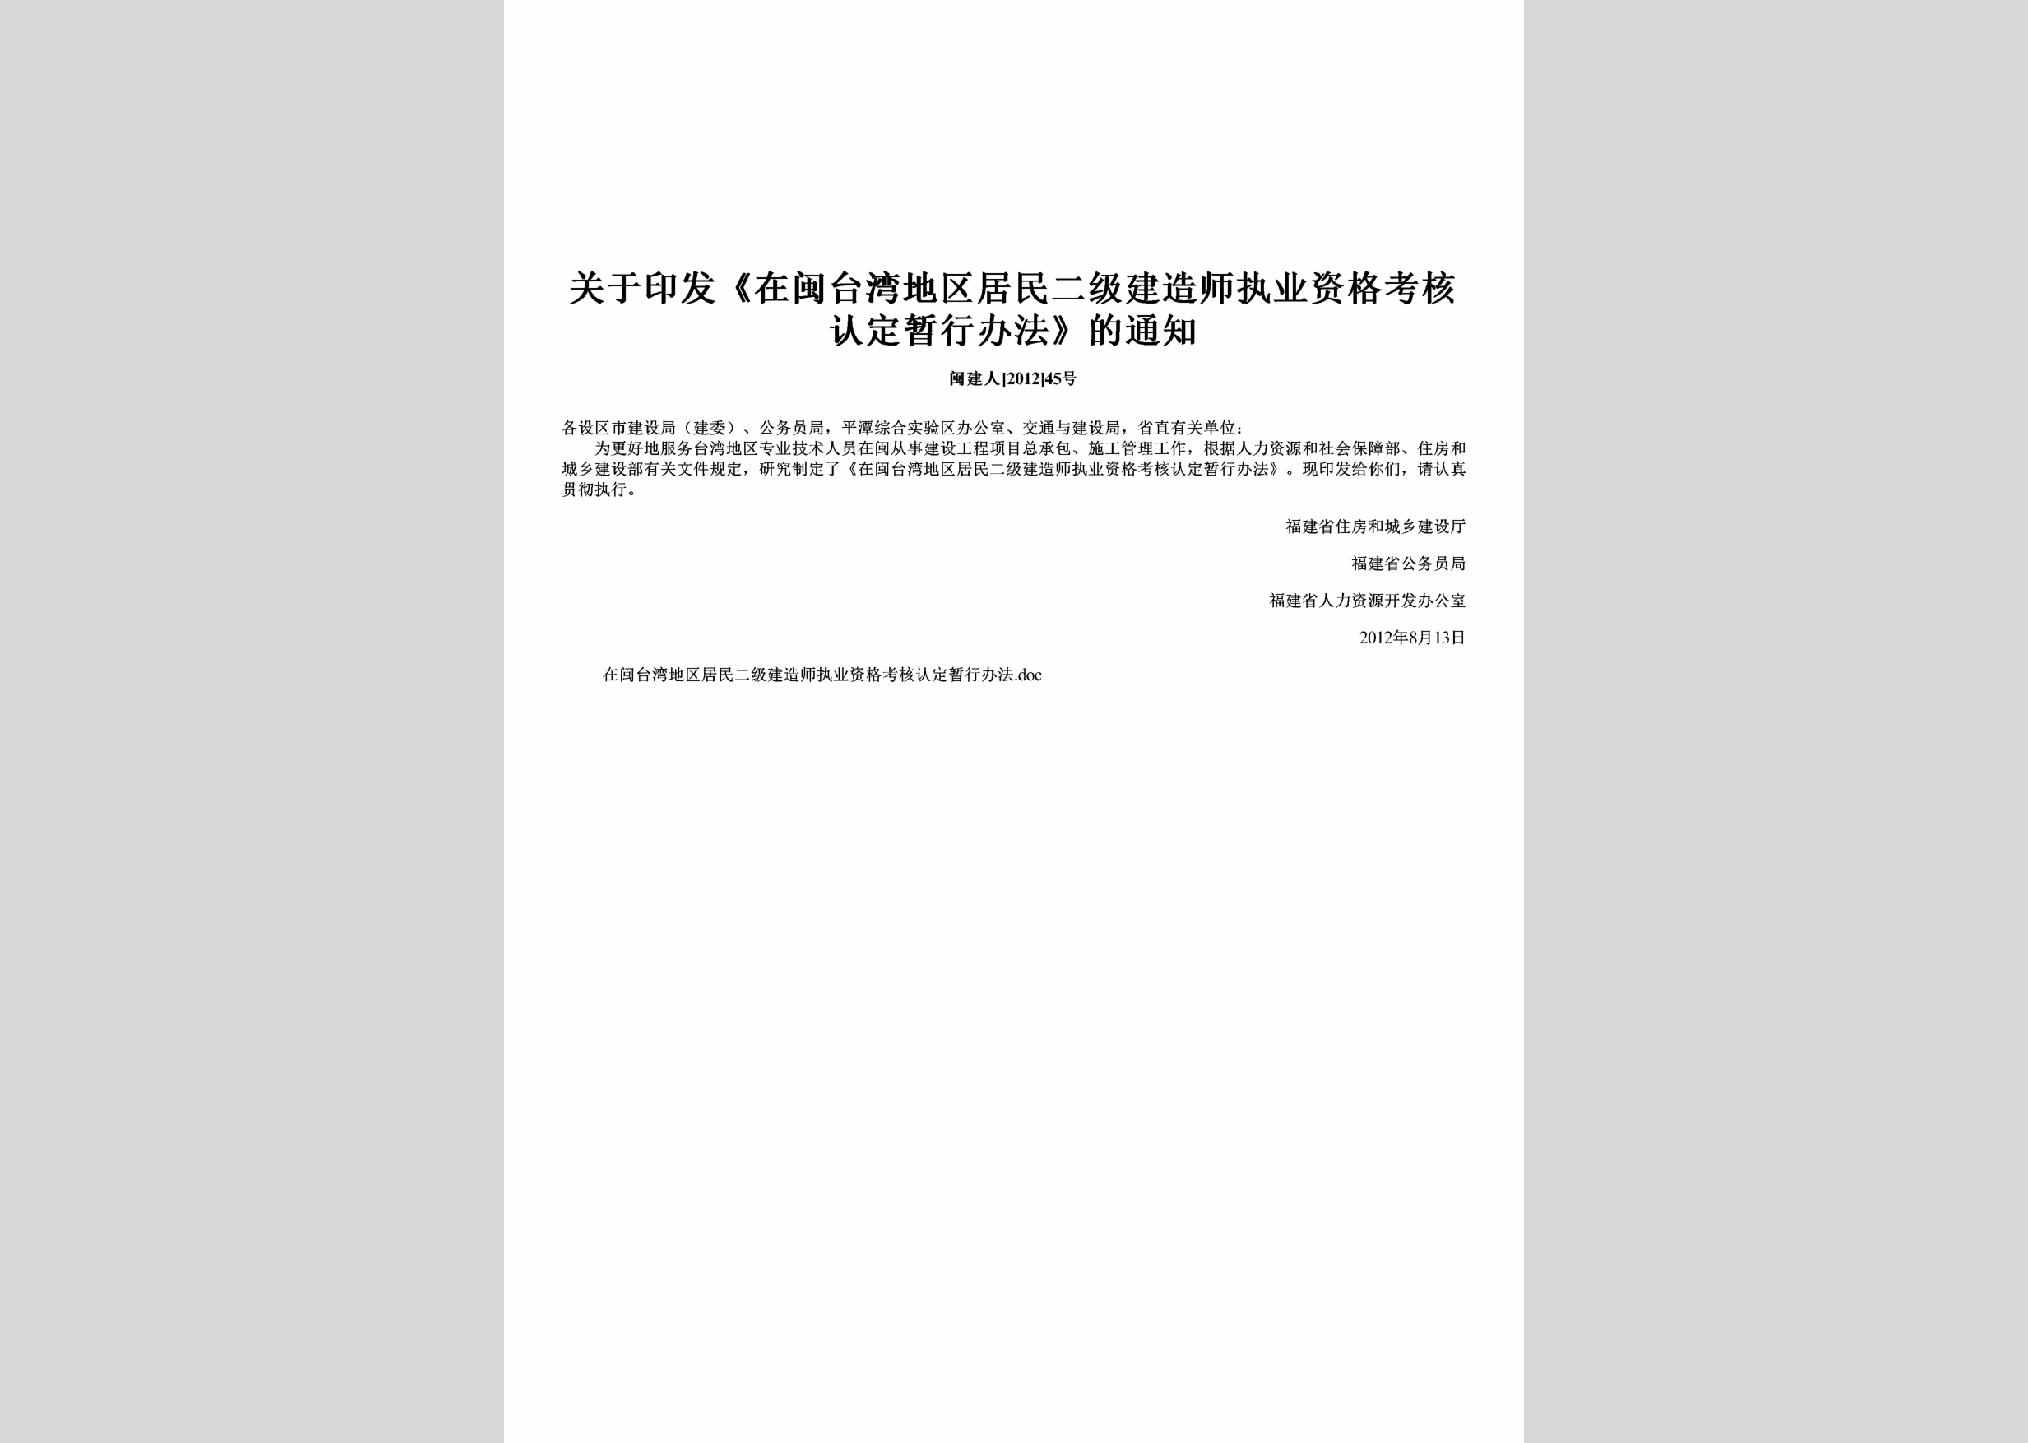 闽建人[2012]45号：关于印发《在闽台湾地区居民二级建造师执业资格考核认定暂行办法》的通知